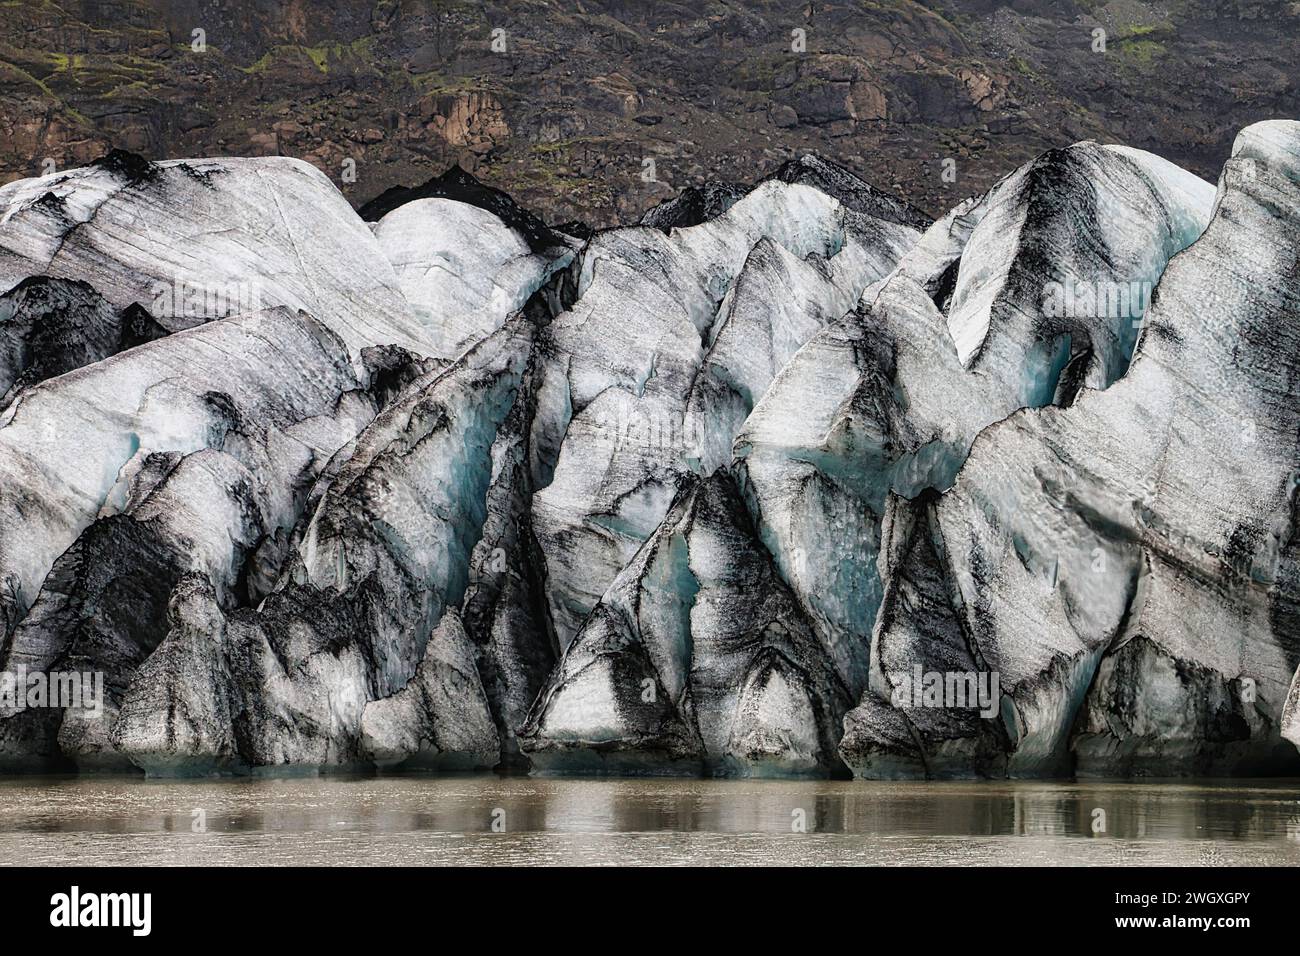 Sólheimajökull : une décharge glaciaire de la plus grande calotte glaciaire de Mýrdalsjökull dans le sud de l'Islande. Banque D'Images